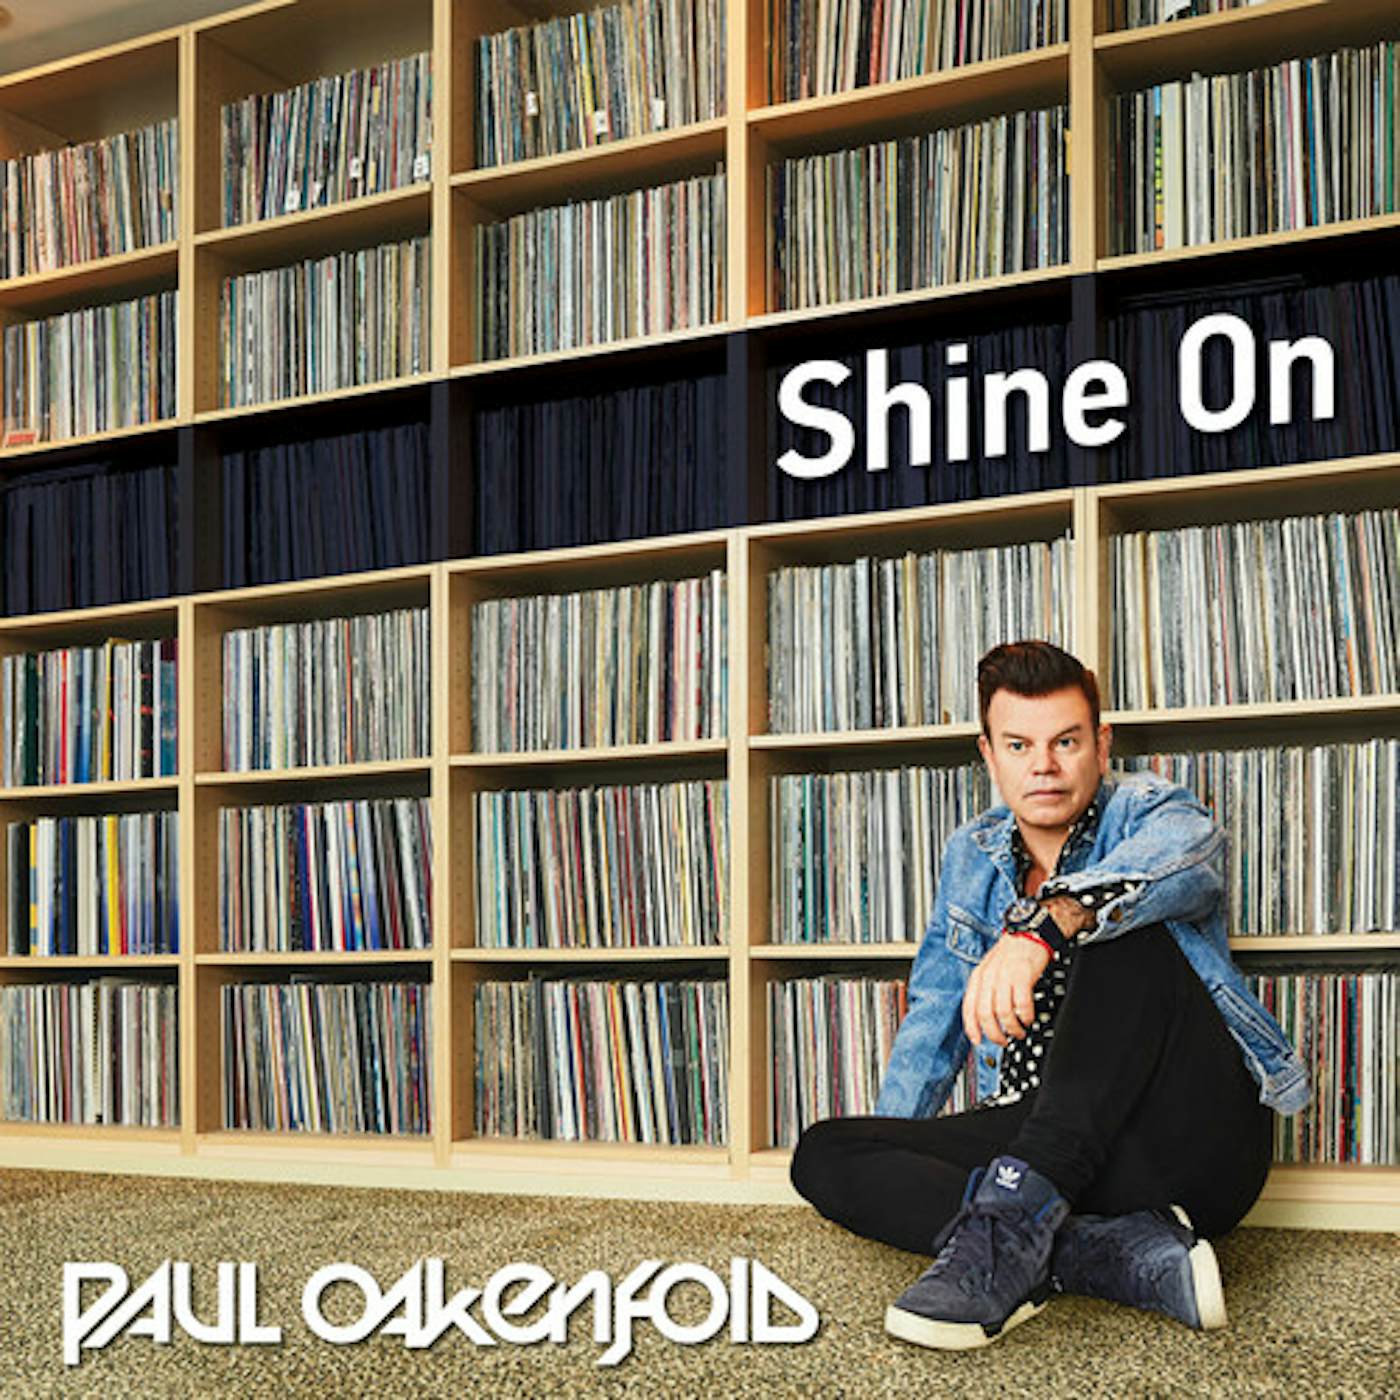 Paul Oakenfold SHINE ON CD